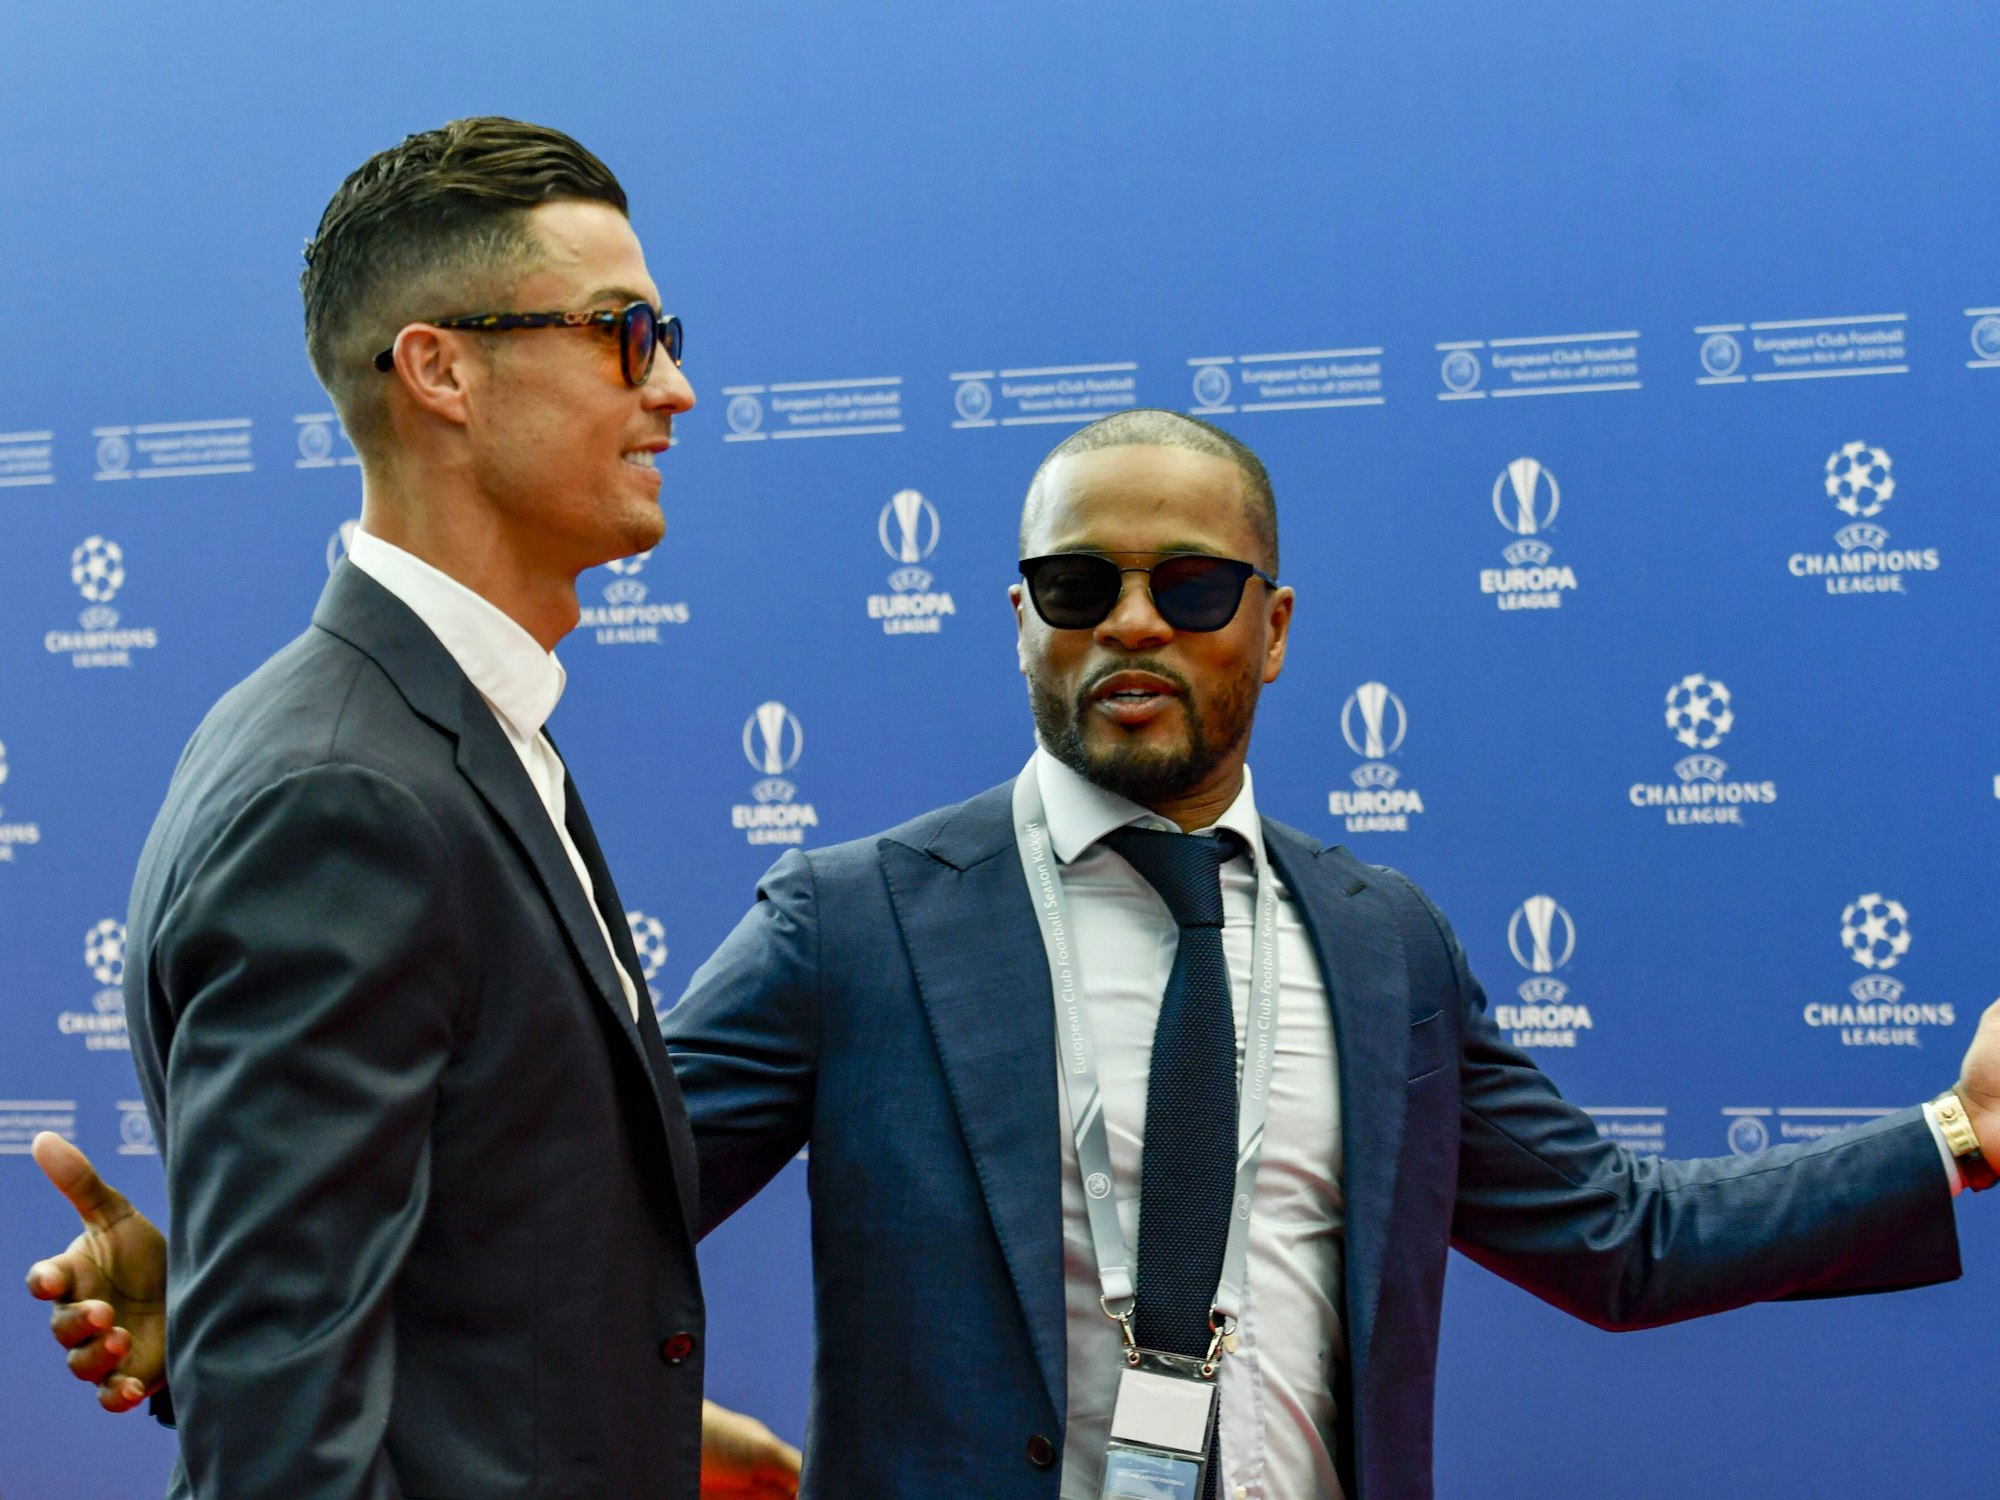 Cristiano Ronaldo und Patrice Evra sprechen bei einer Veranstaltung der UEFA-Champions-League miteinander.